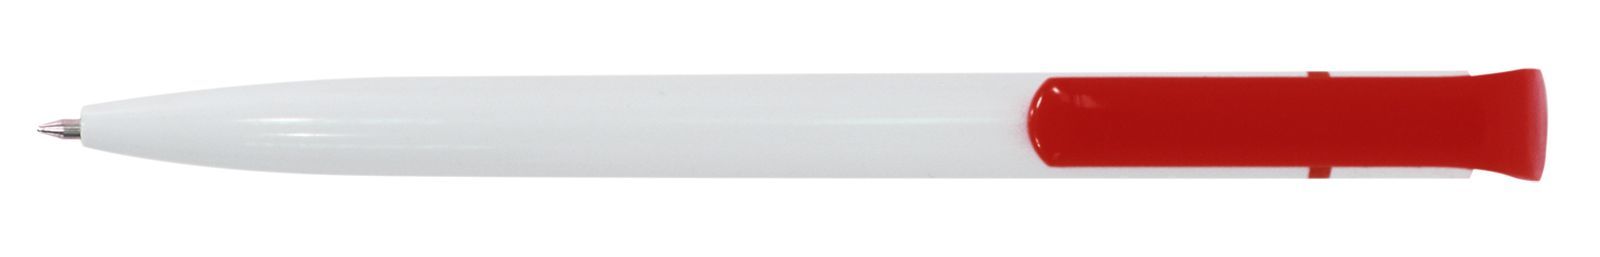 Ручка для логотипа шариковая автоматическая INFORMAT НИКА 0,7 мм, синяя, бело-красный корпус